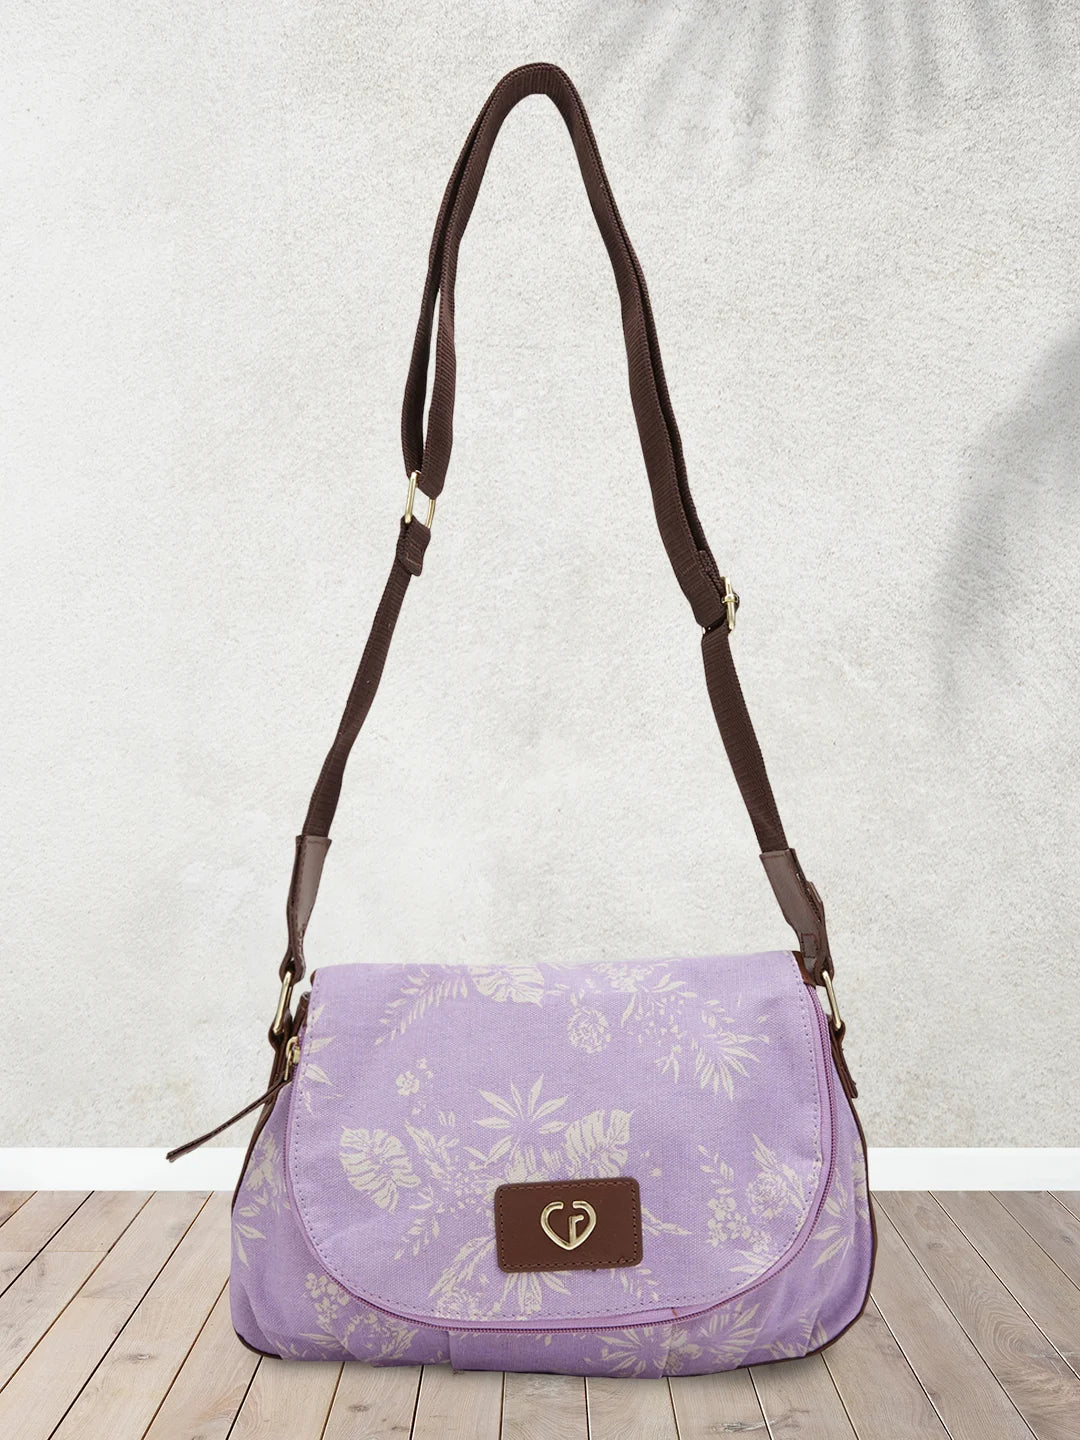 Buy Caprese Teena Women's Tote Bag (Blush) at Amazon.in